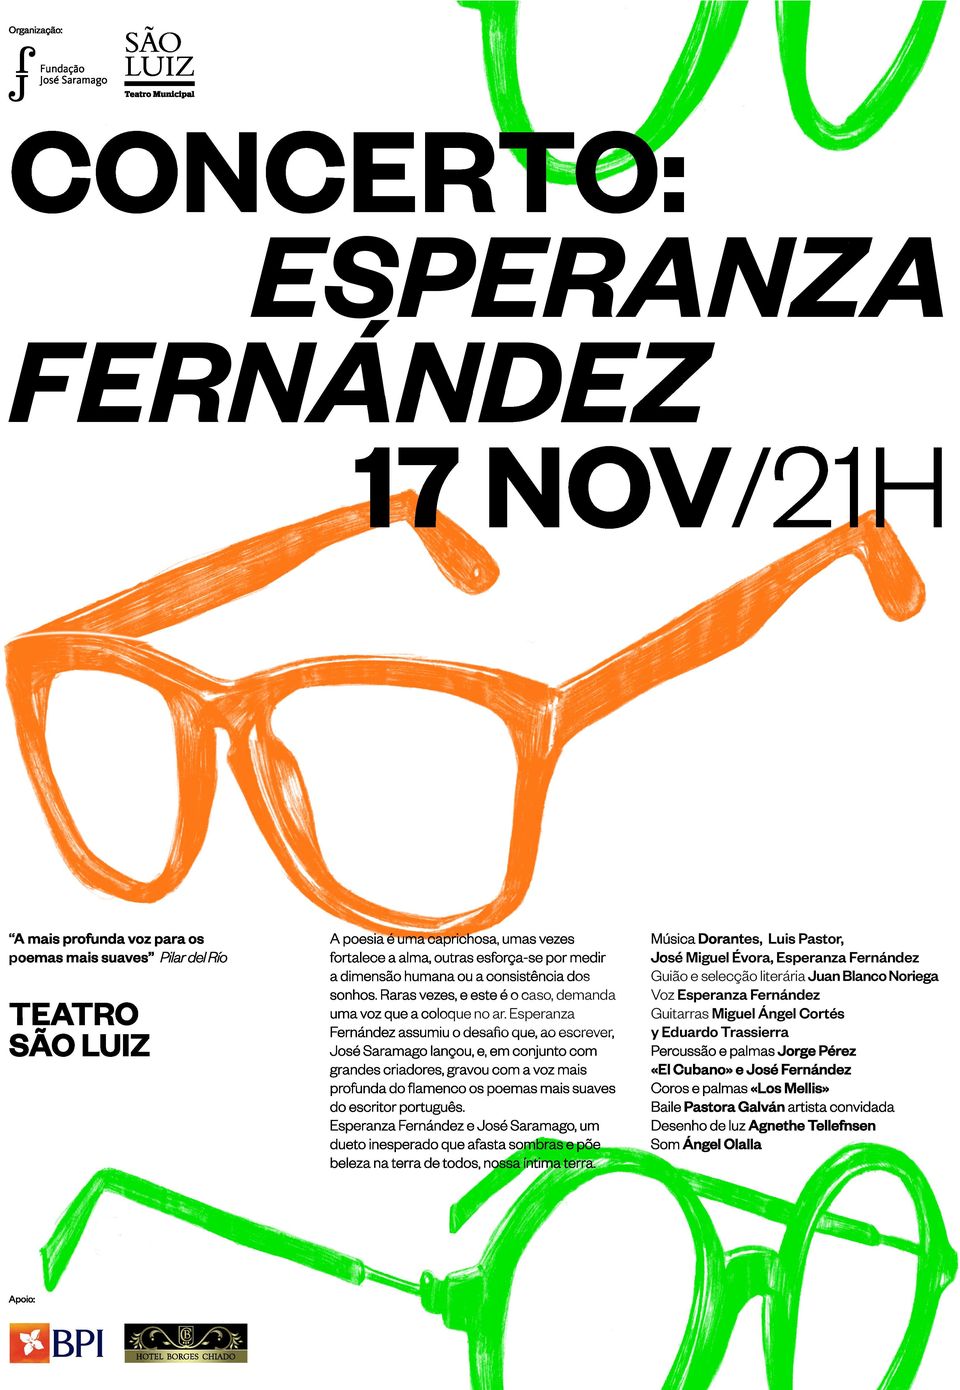 Esperanza Fernández assumiu o desafio que, ao escrever, José Saramago lançou, e, em conjunto com grandes criadores, gravou com a voz mais profunda do flamenco os poemas mais suaves do escritor